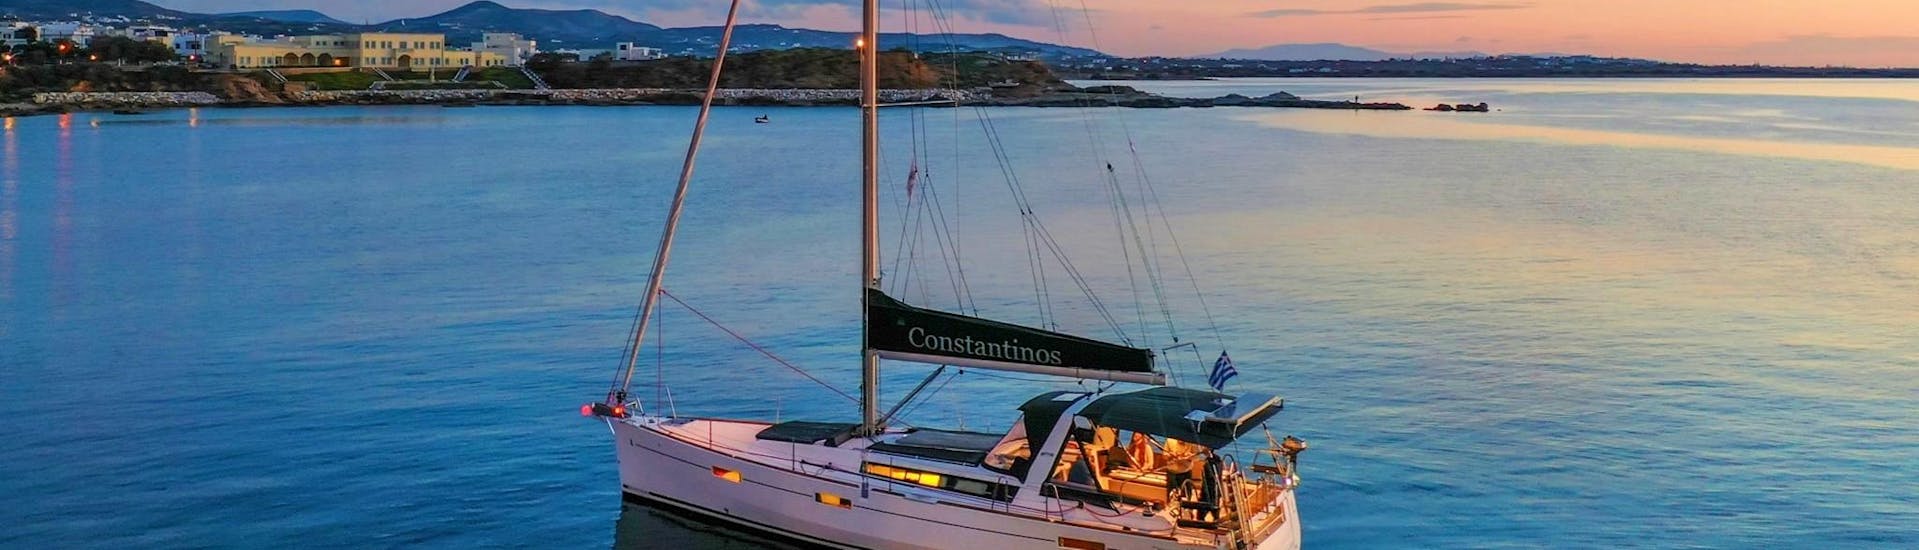 Während der Segeltour bei Sonnenuntergang in Naxos mit Naxos Catamaran liegt das Boot an einem Aussichtspunkt , von wo aus die Teilnehmer den wunderschönen Sonnenuntergang über der Ägäis genießen können.